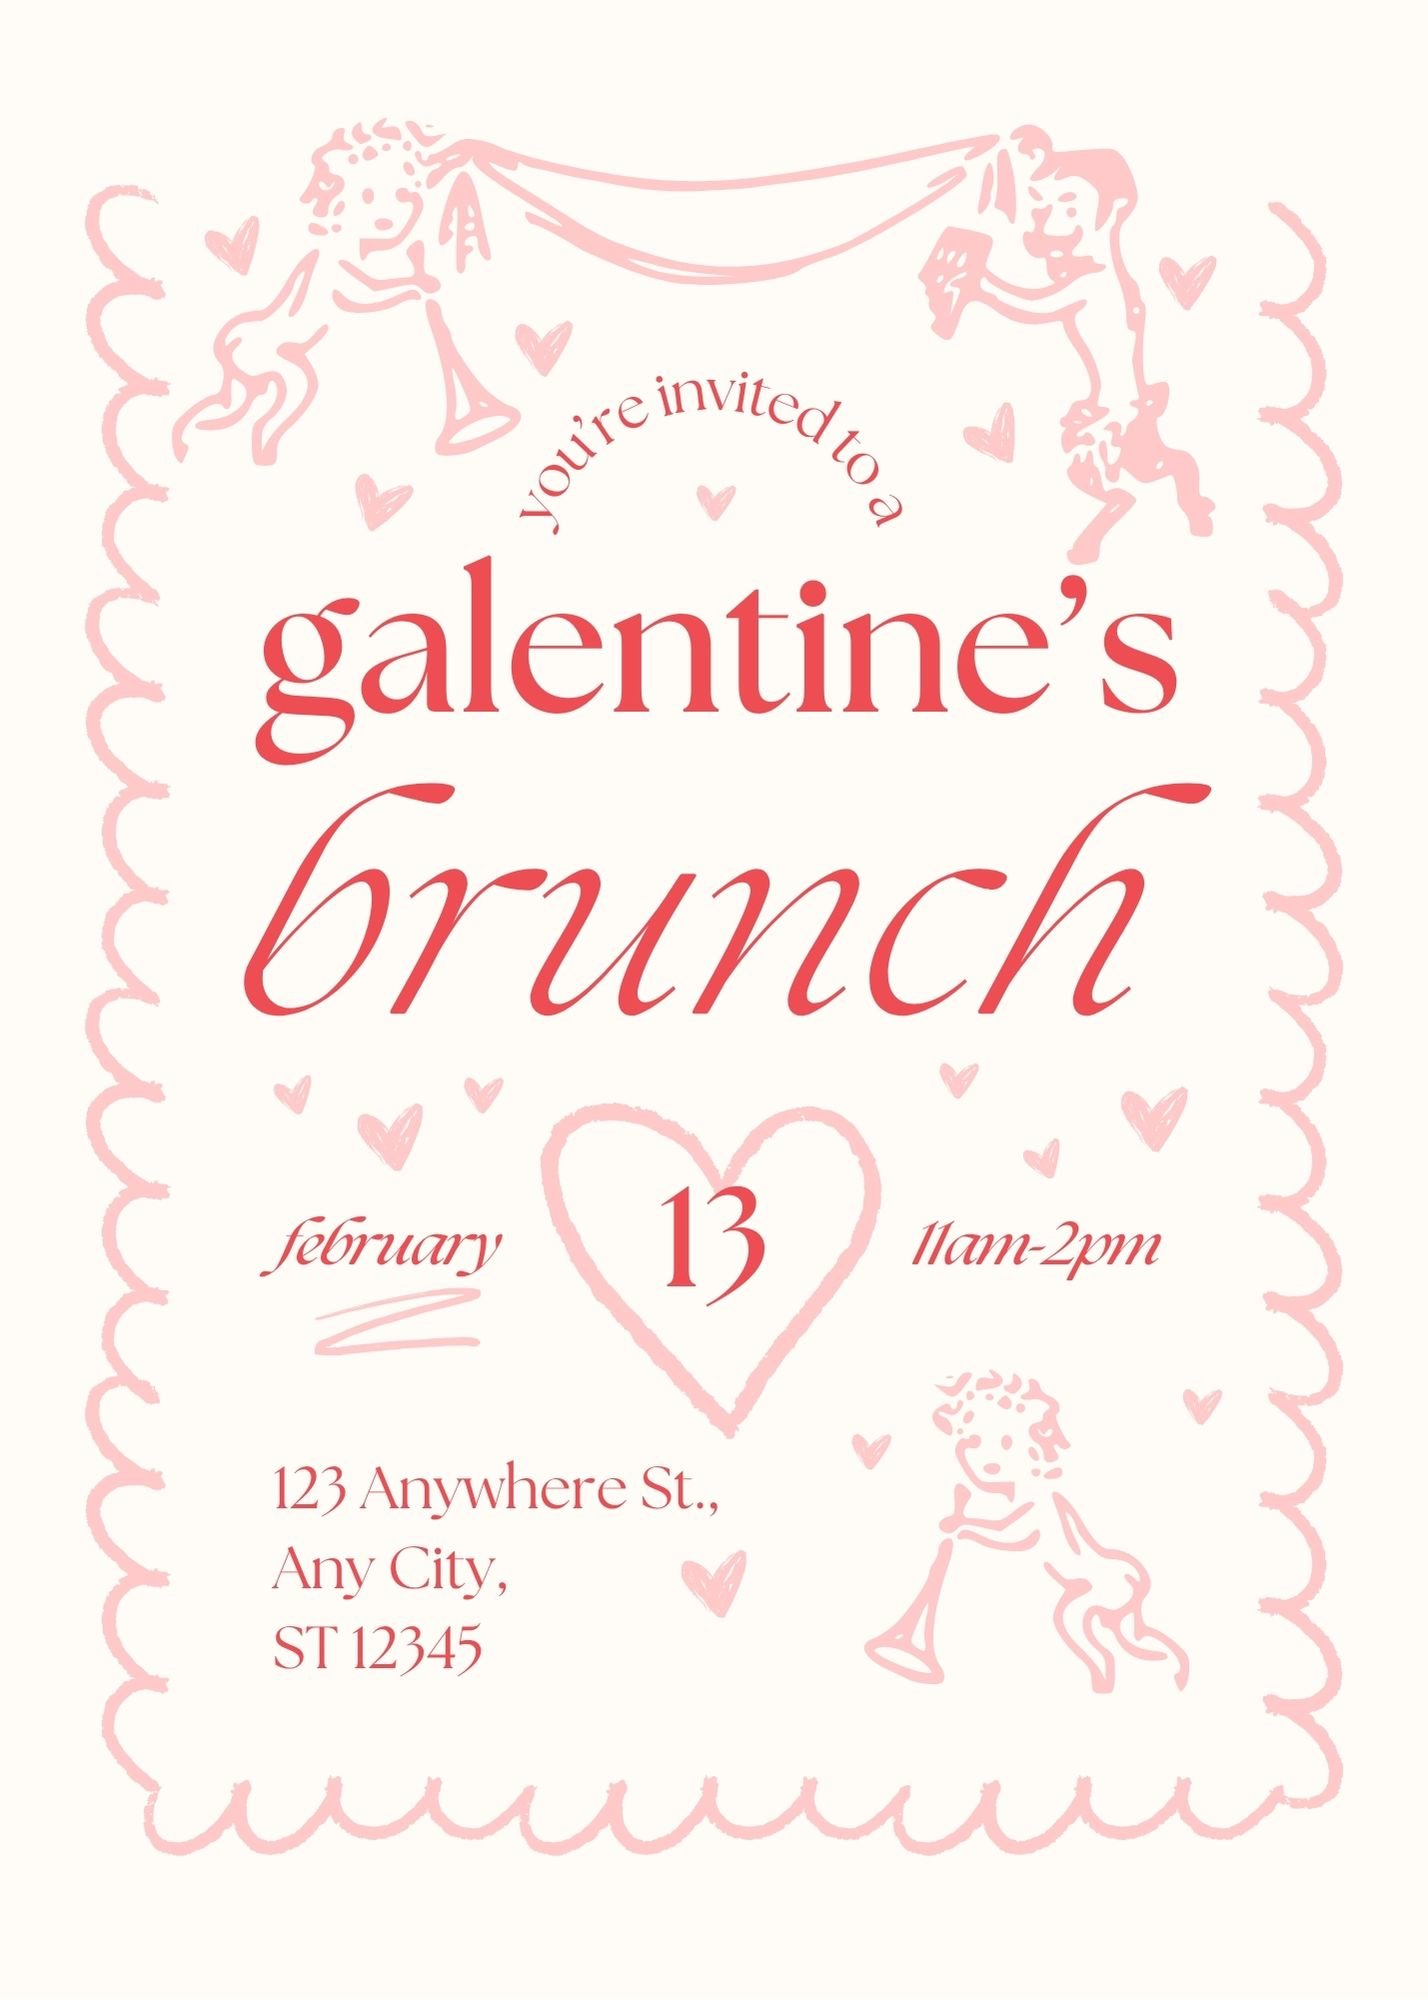 Pink & White Cherub Galentine's Day Brunch Party Invitation.jpg